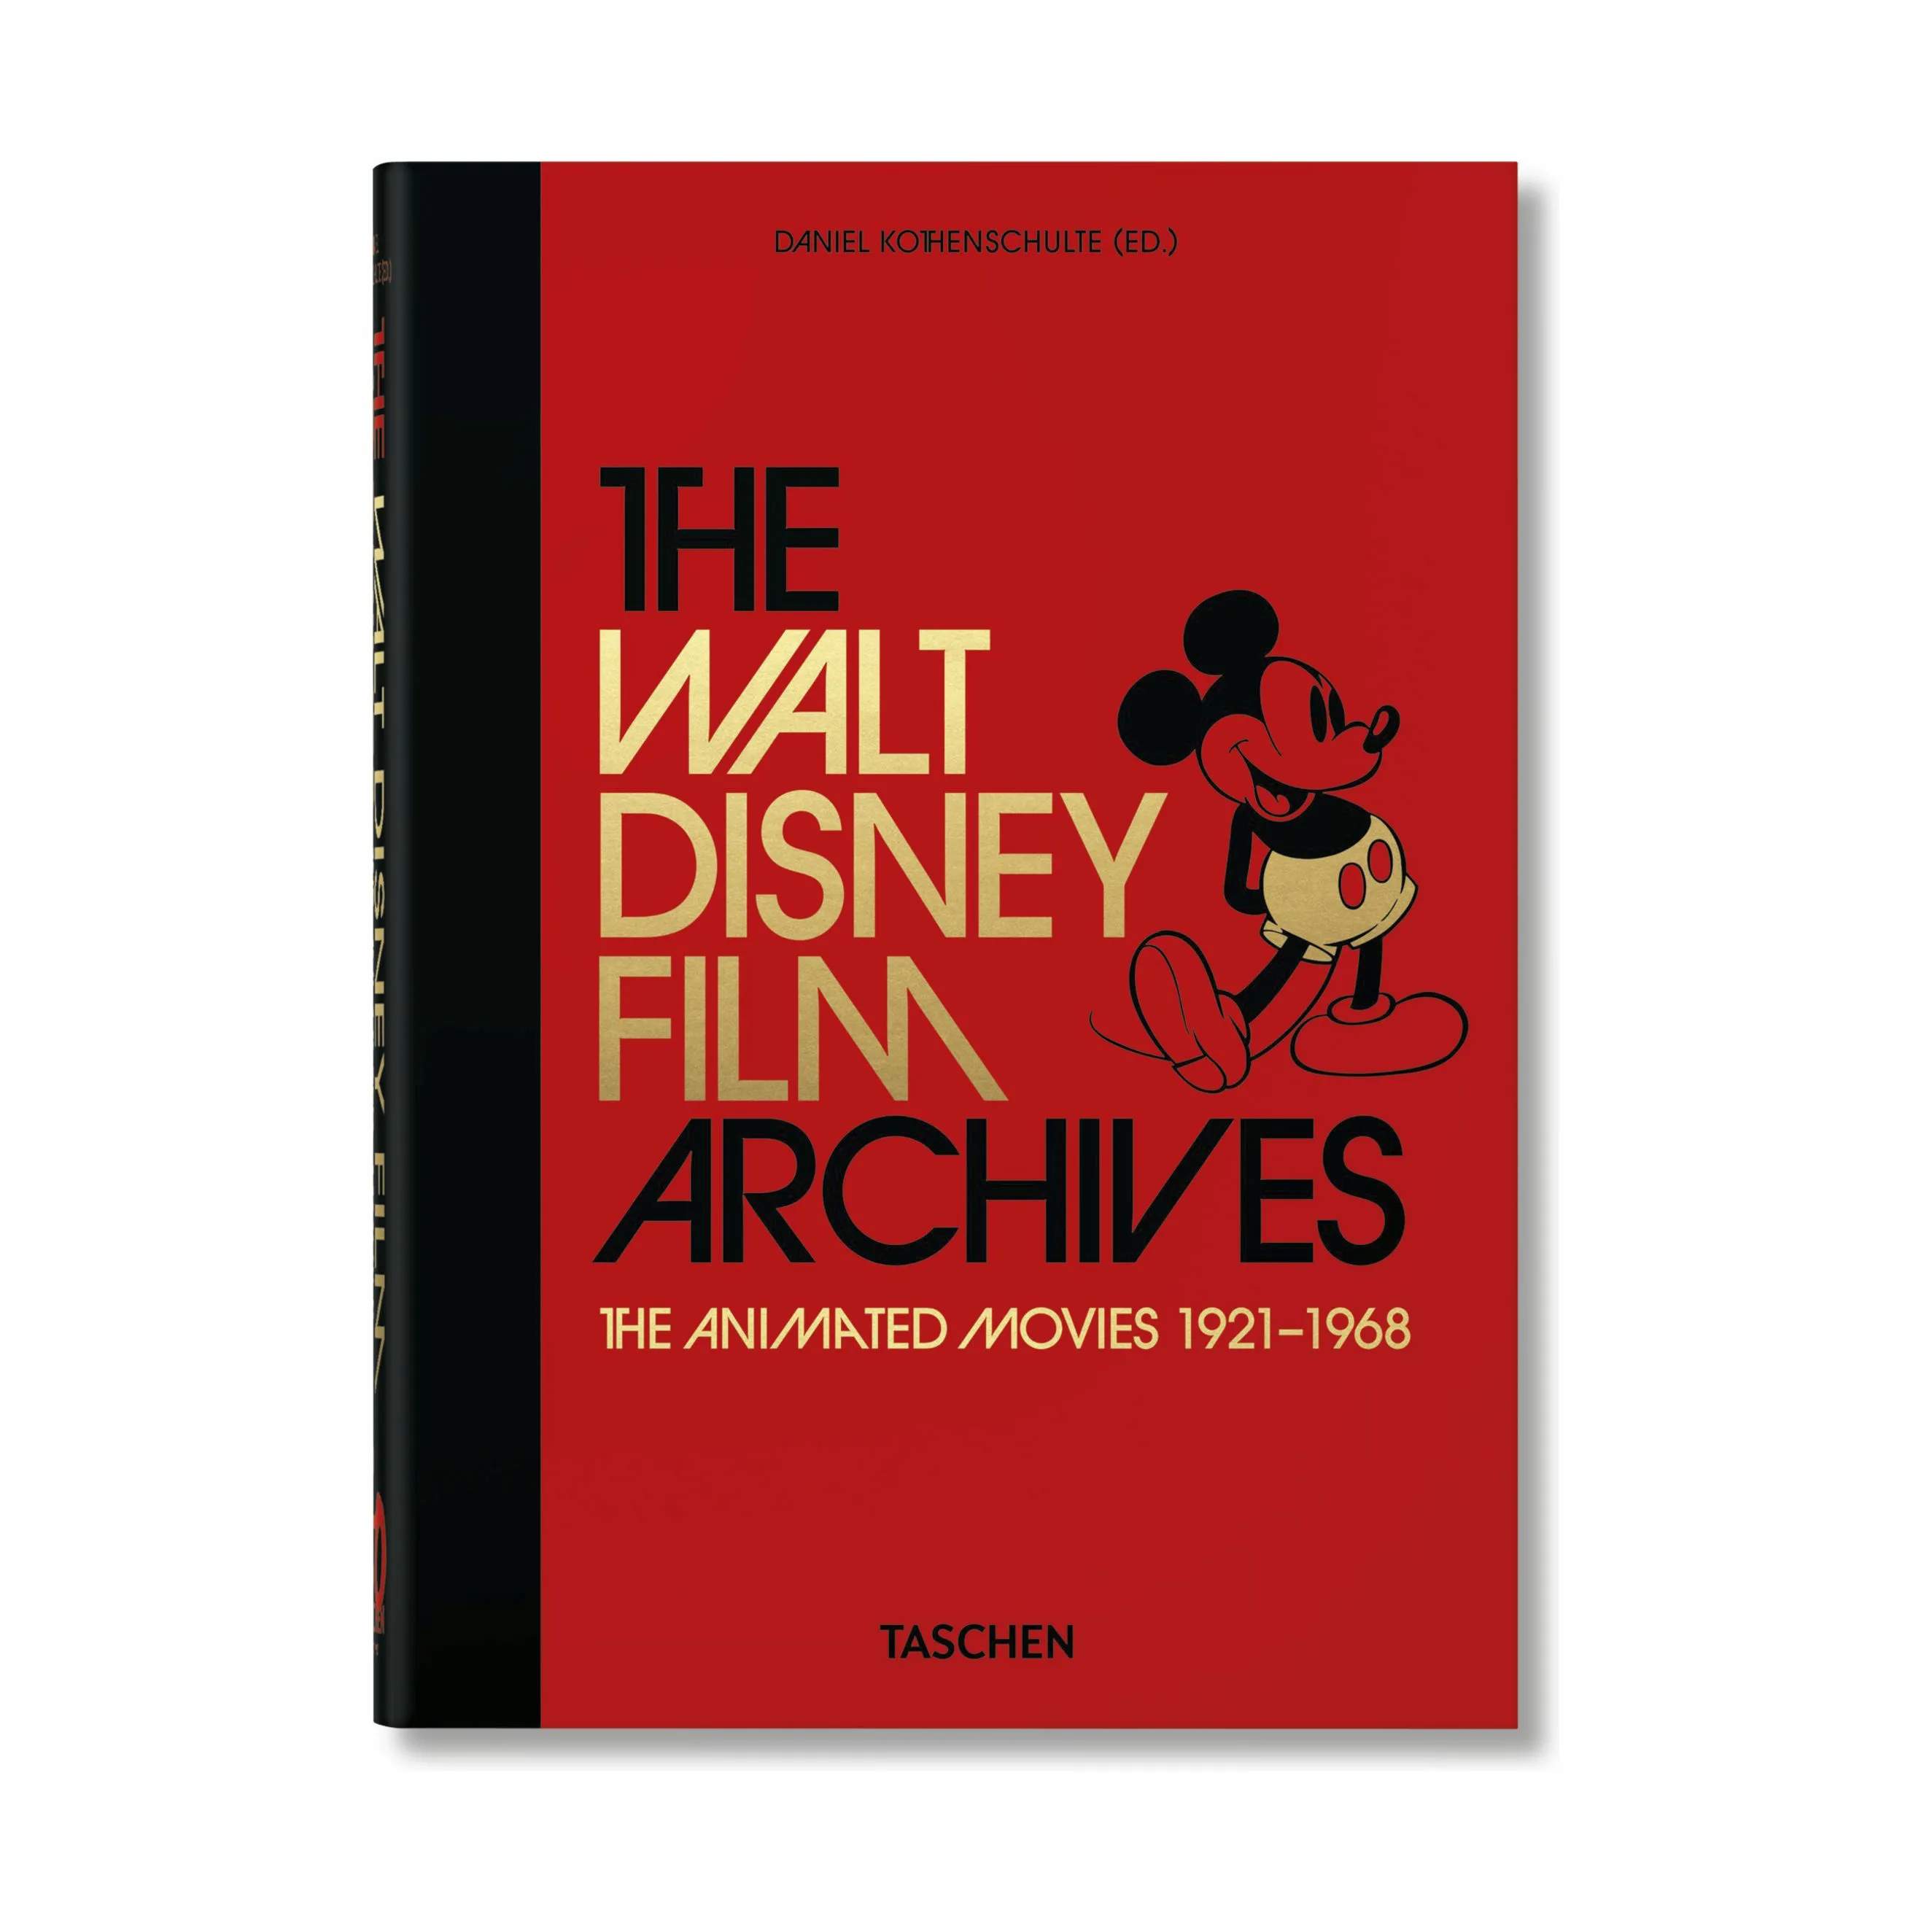 The Walt Disney Film Archives. 40 Series - Af Daniel Kothenschulte